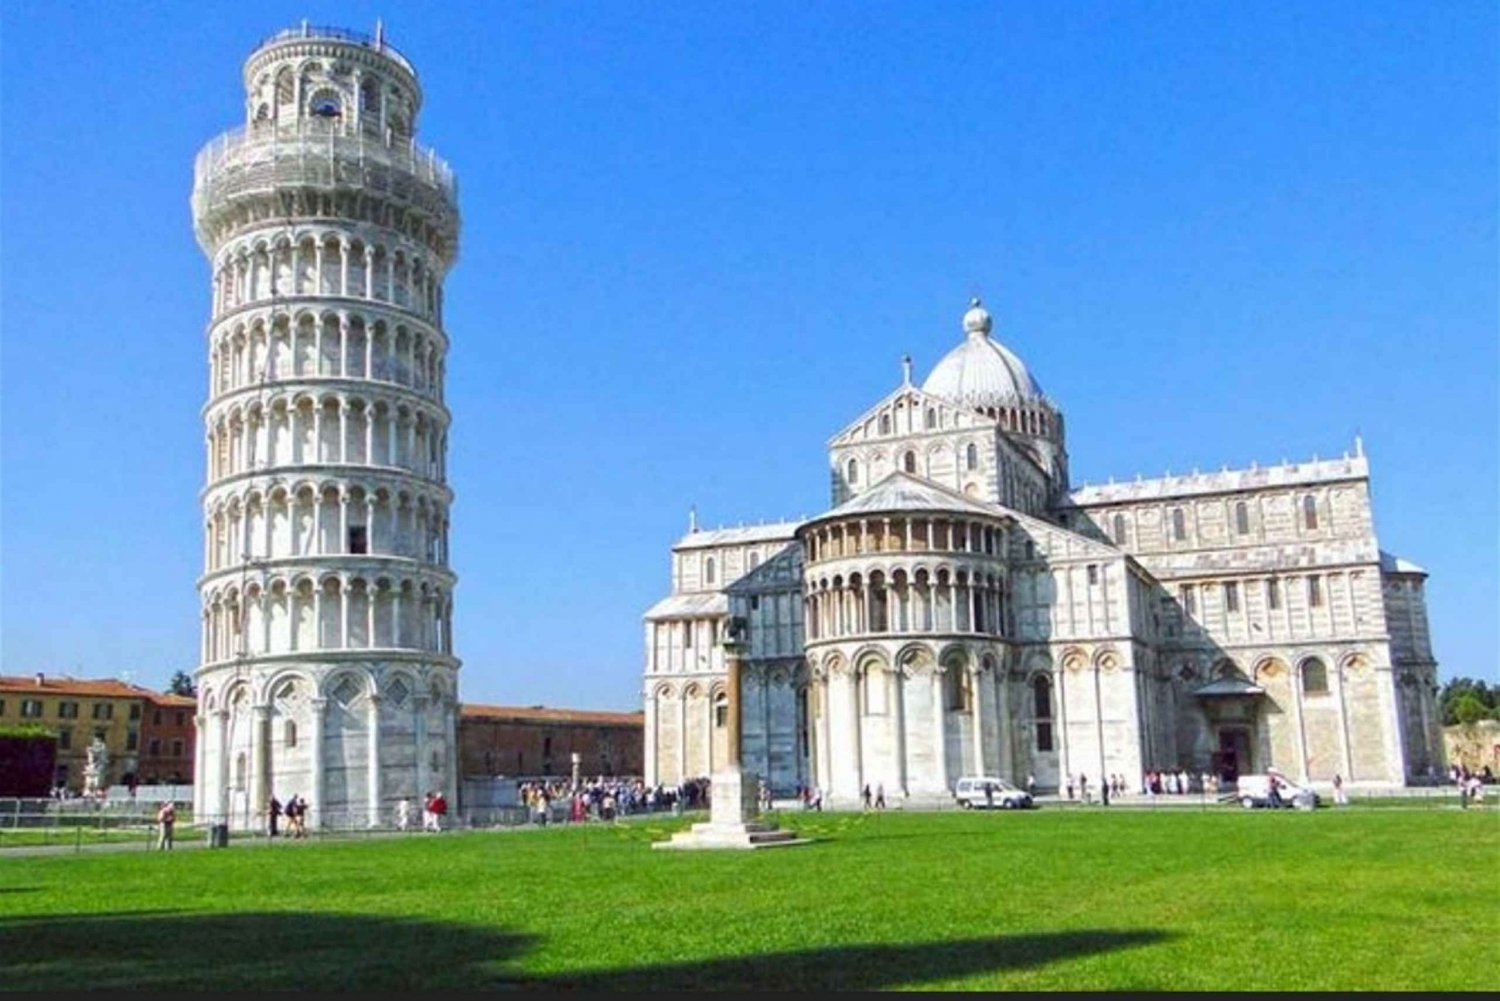 De Roma: Excursão diurna a Pisa e Florença com o Museu Accademia